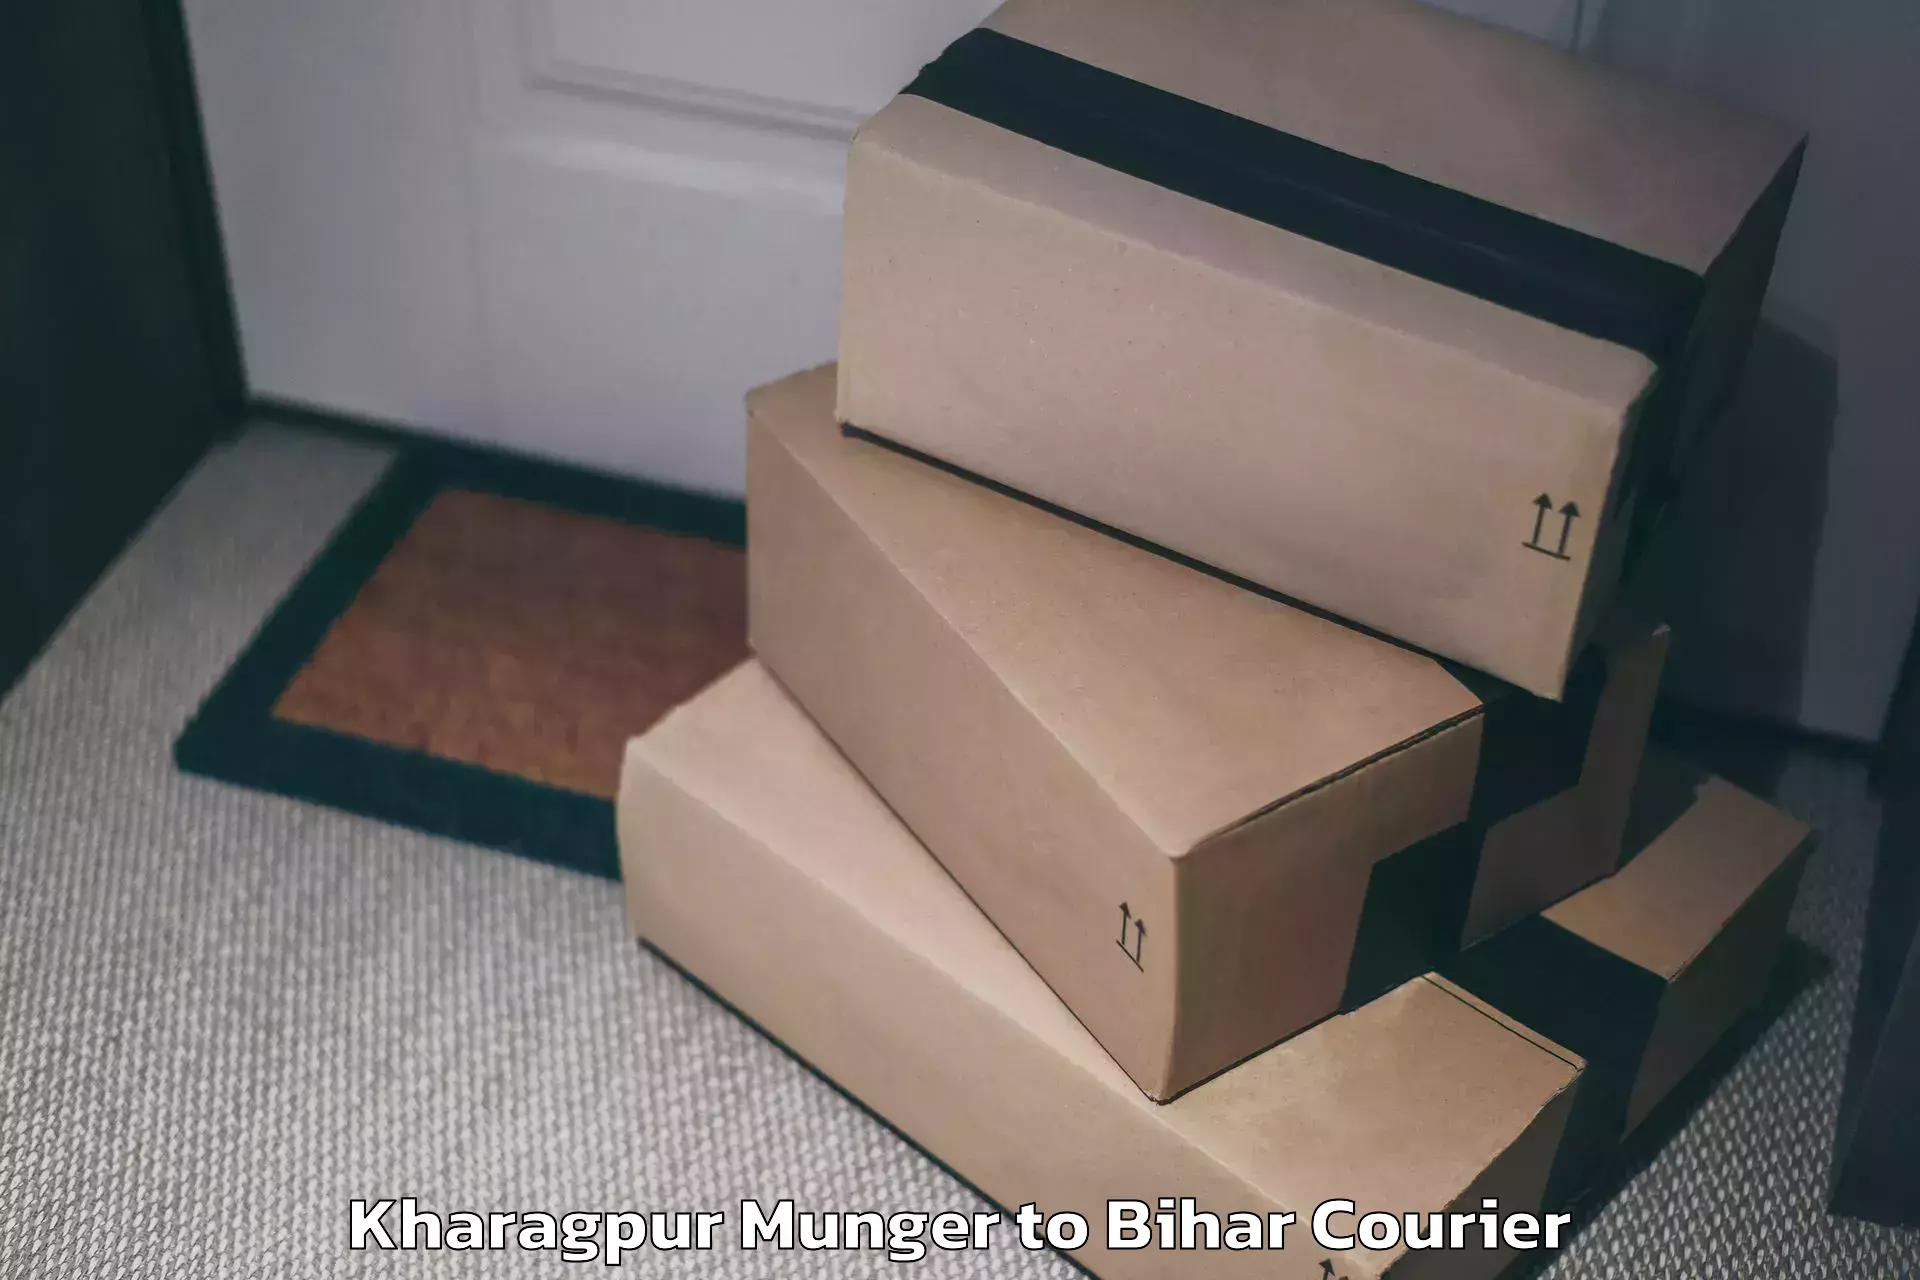 Baggage handling services Kharagpur Munger to Bihar